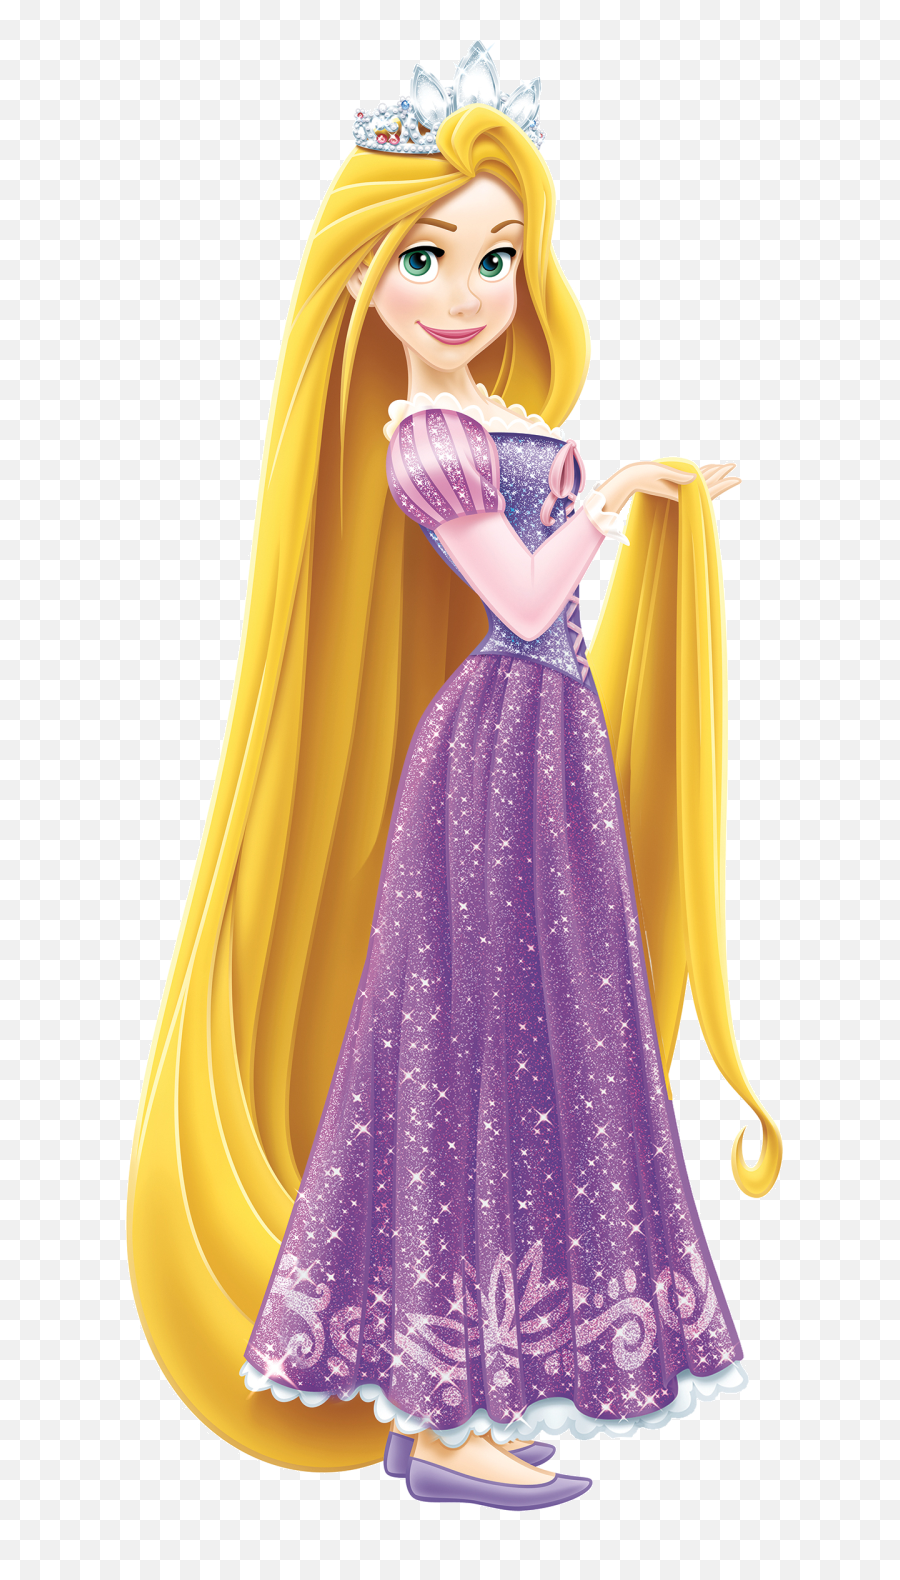 Tiara - Princess Rapunzel Png,Rapunzel Transparent Background